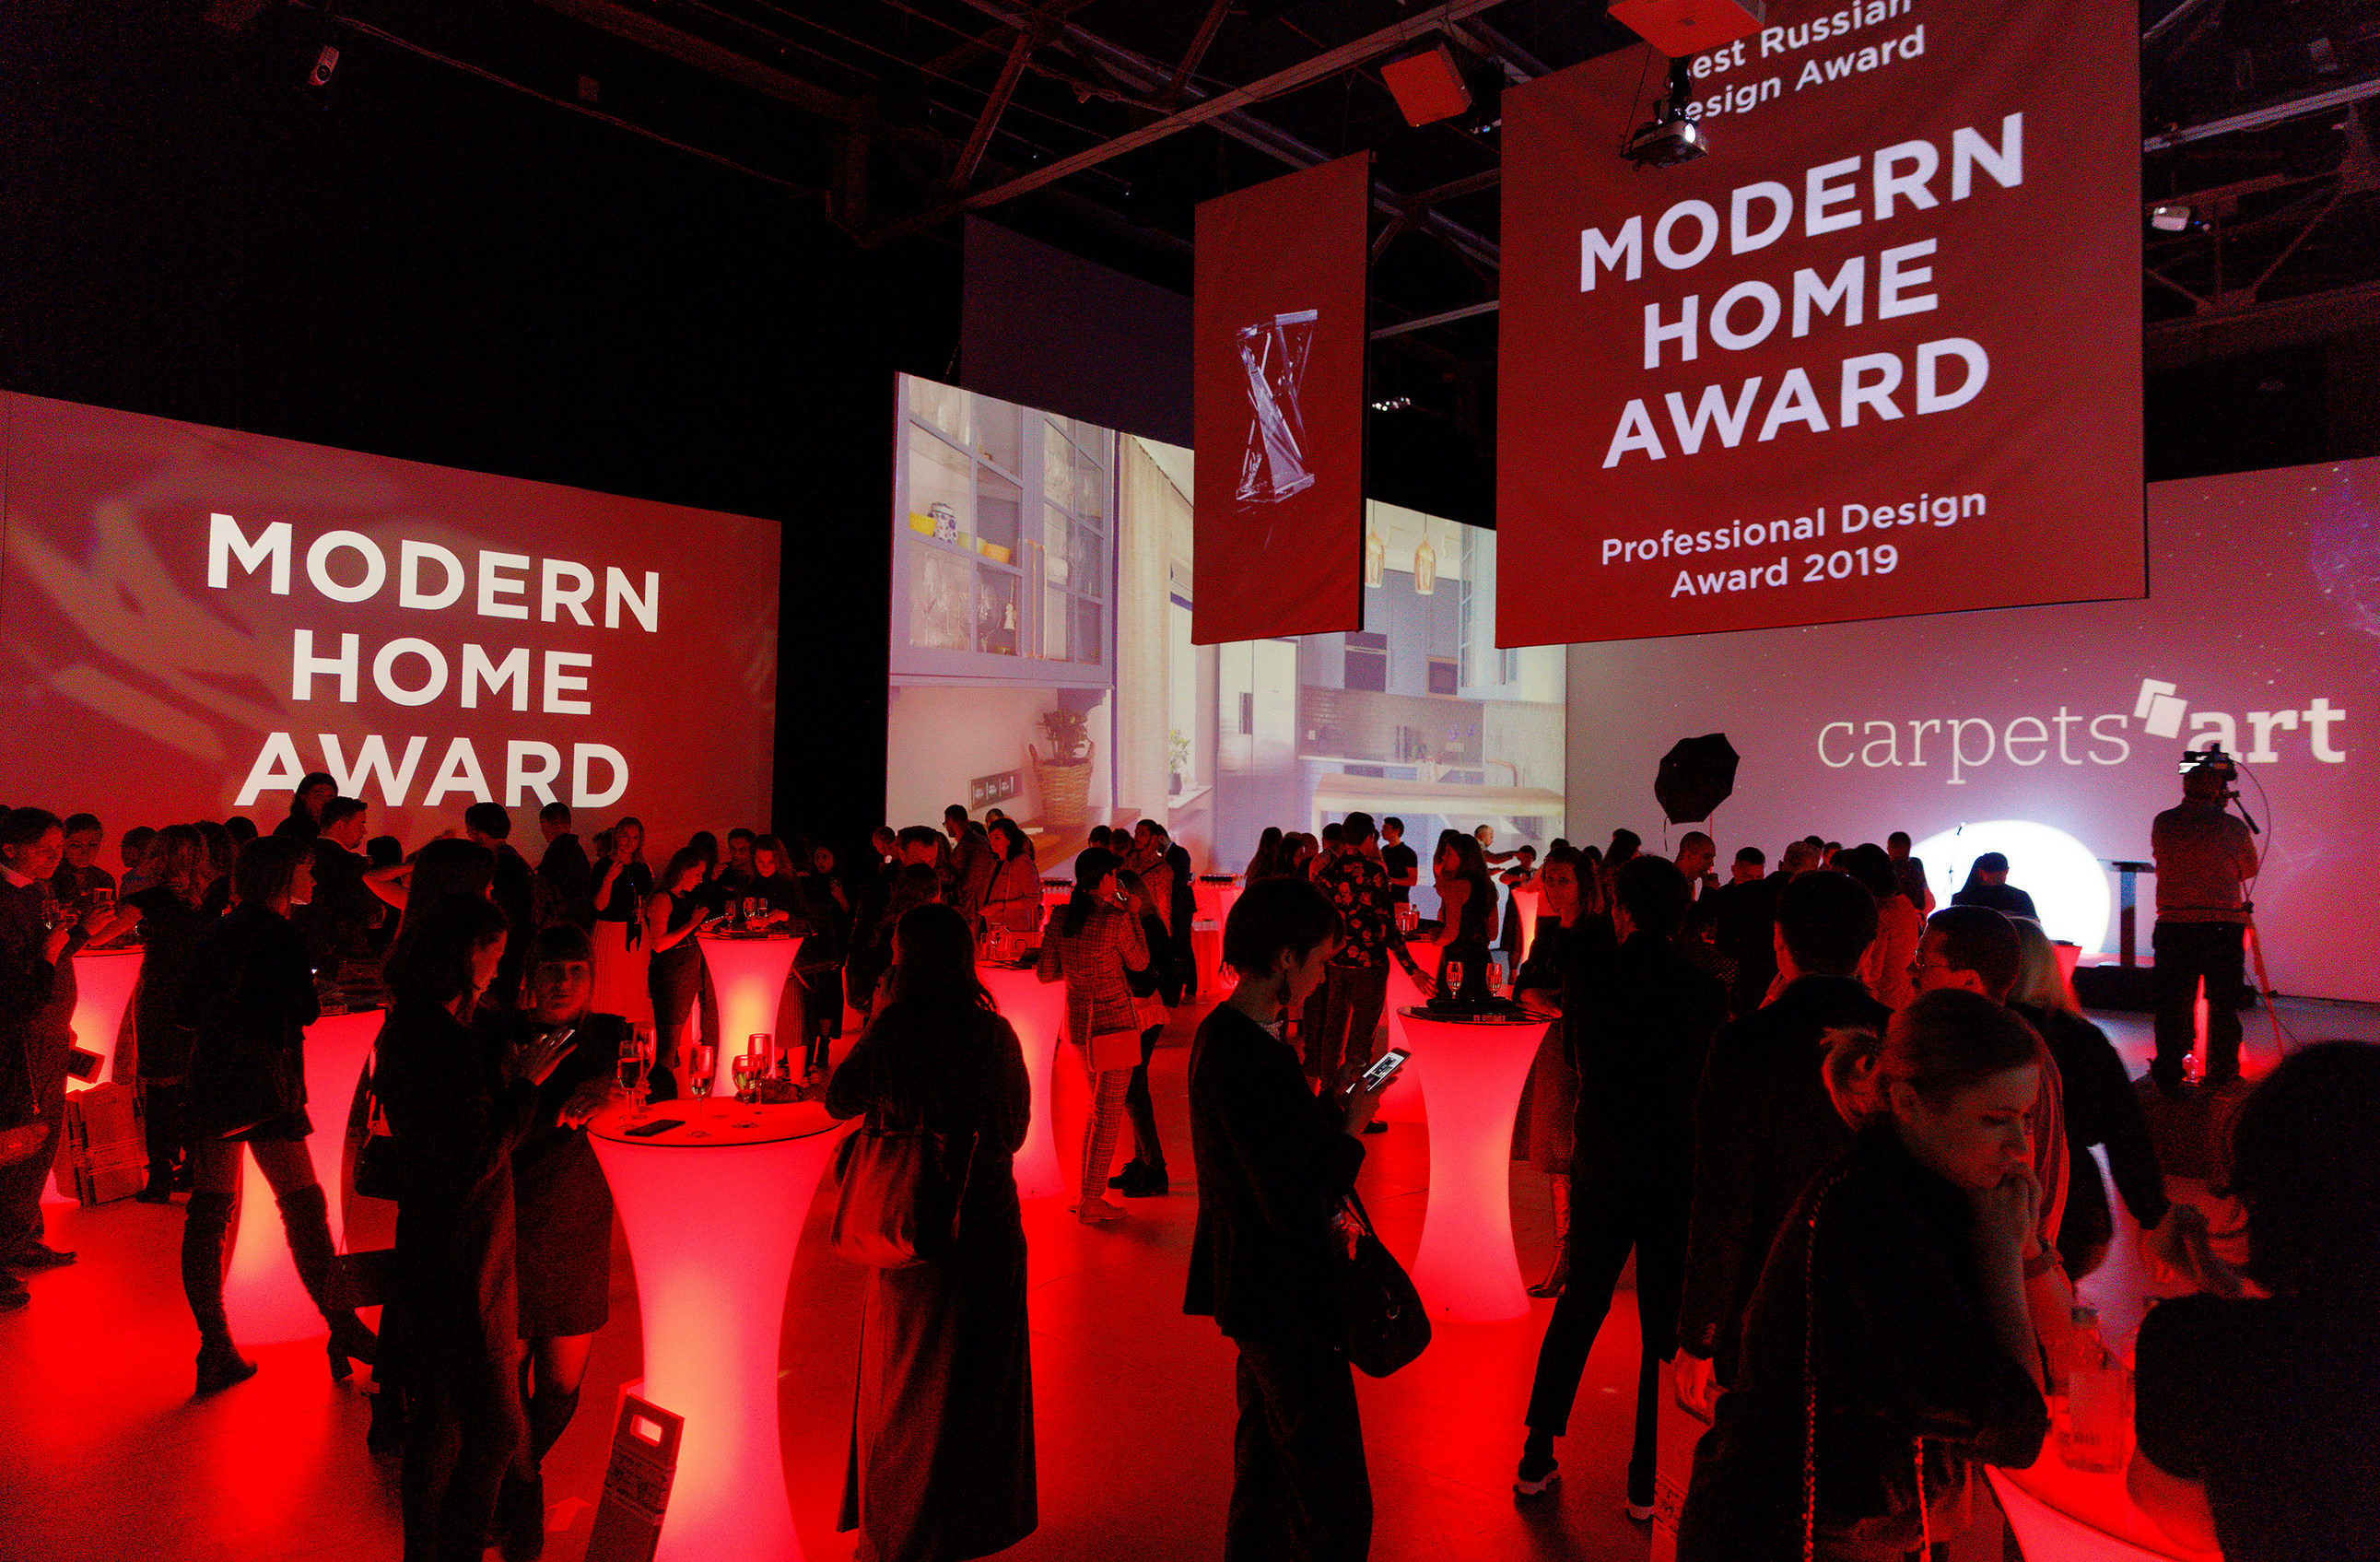 первая церемония награждения победителей всероссийской профессиональной премии за лучший современный жилой интерьер MODERN HOME Professional Design Award 2019